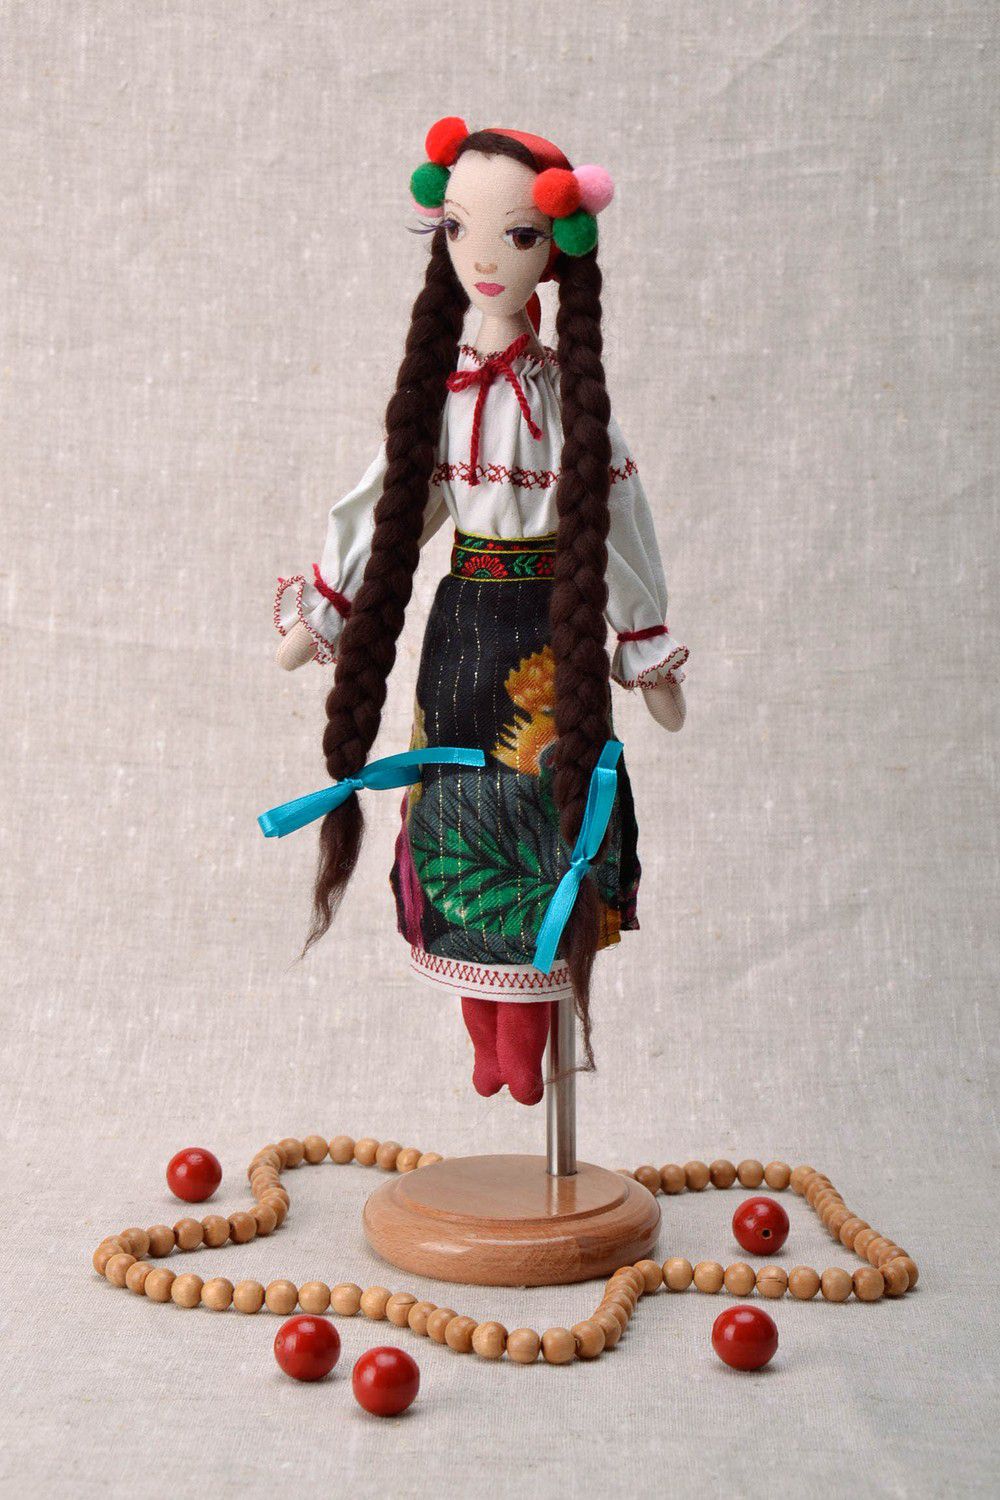 Textil Puppe auf der Stütze Ukrainerin foto 1